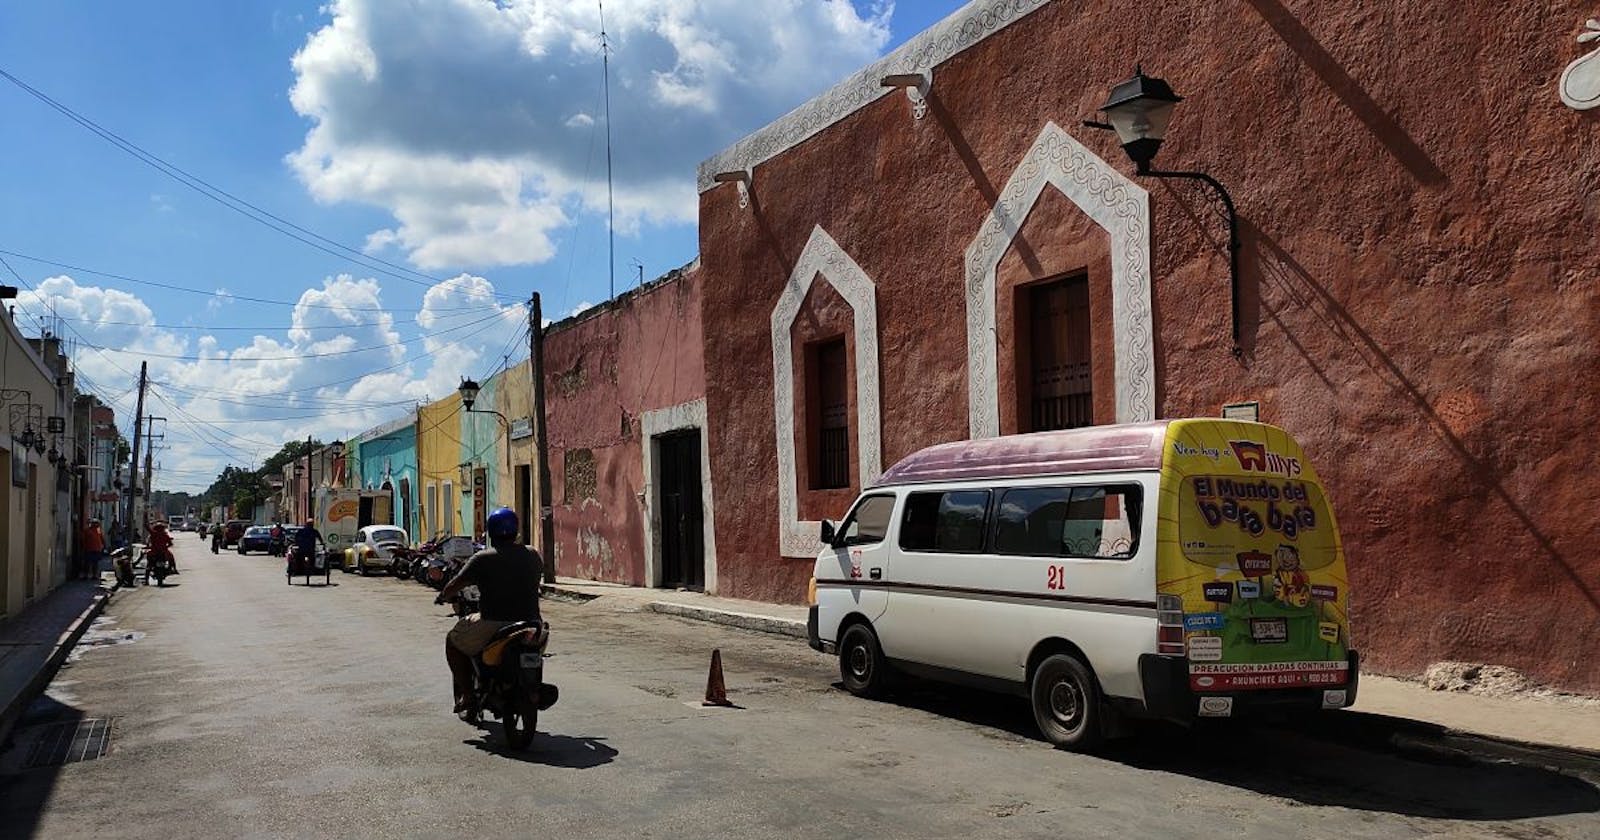 Zwiedzanie Valladolid na Jukatanie - pieszo i rowerem.